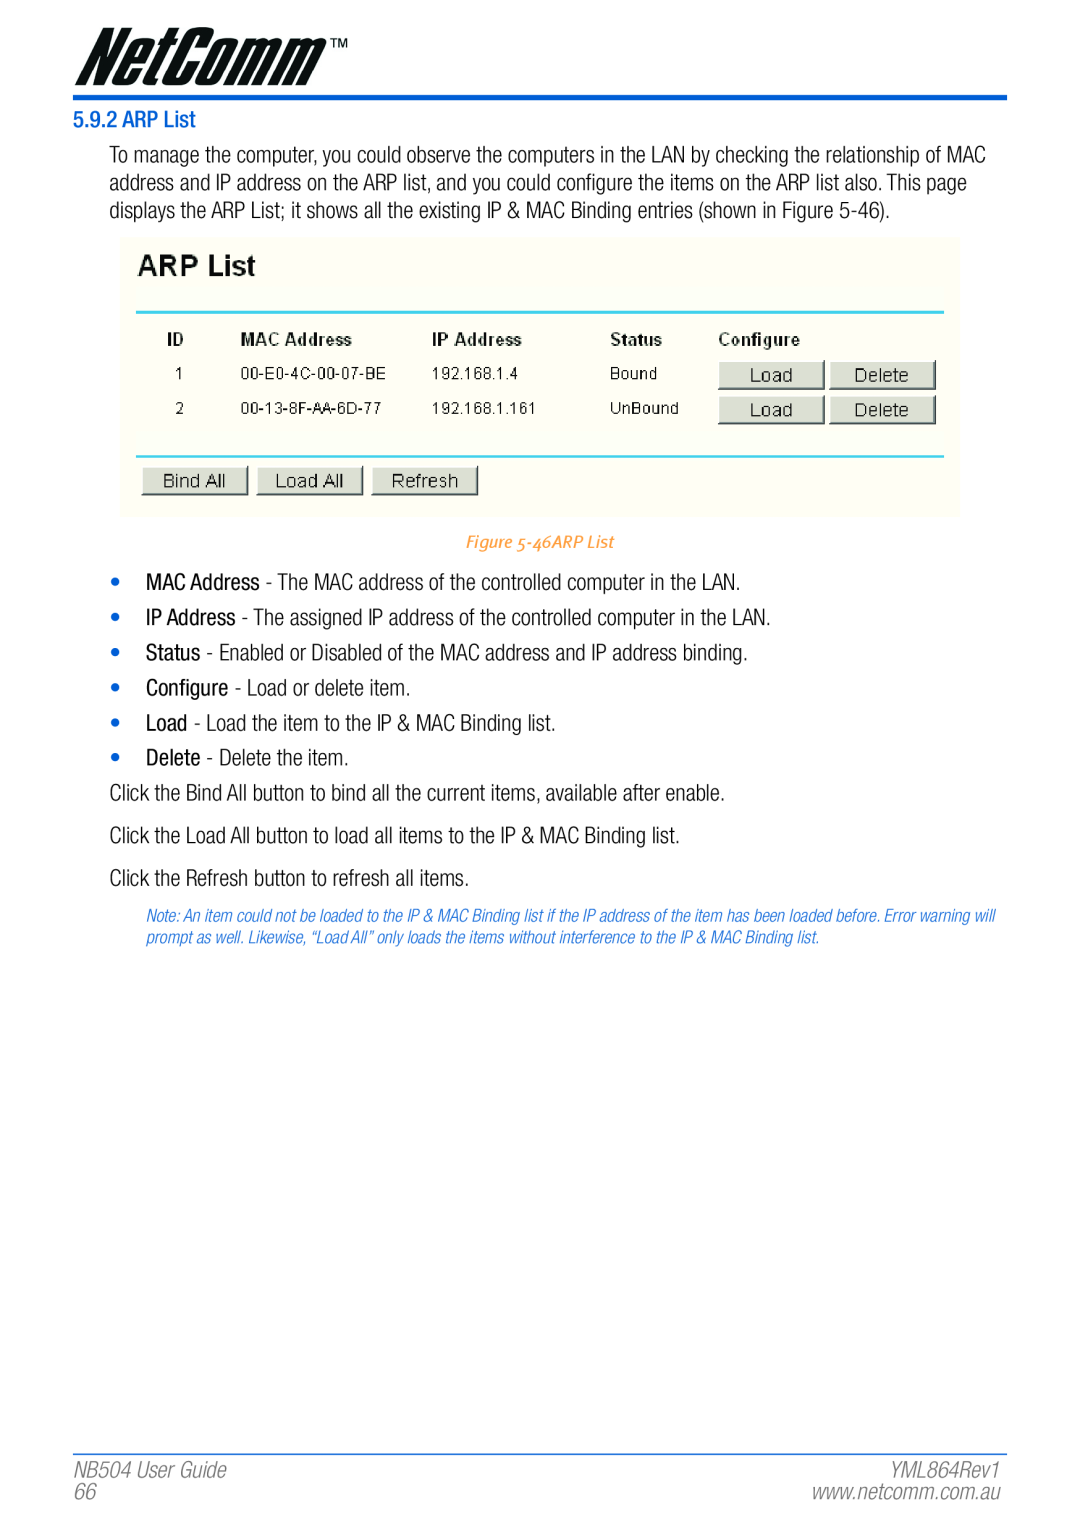 NetComm manual NB504 User Guide, 46ARP List 